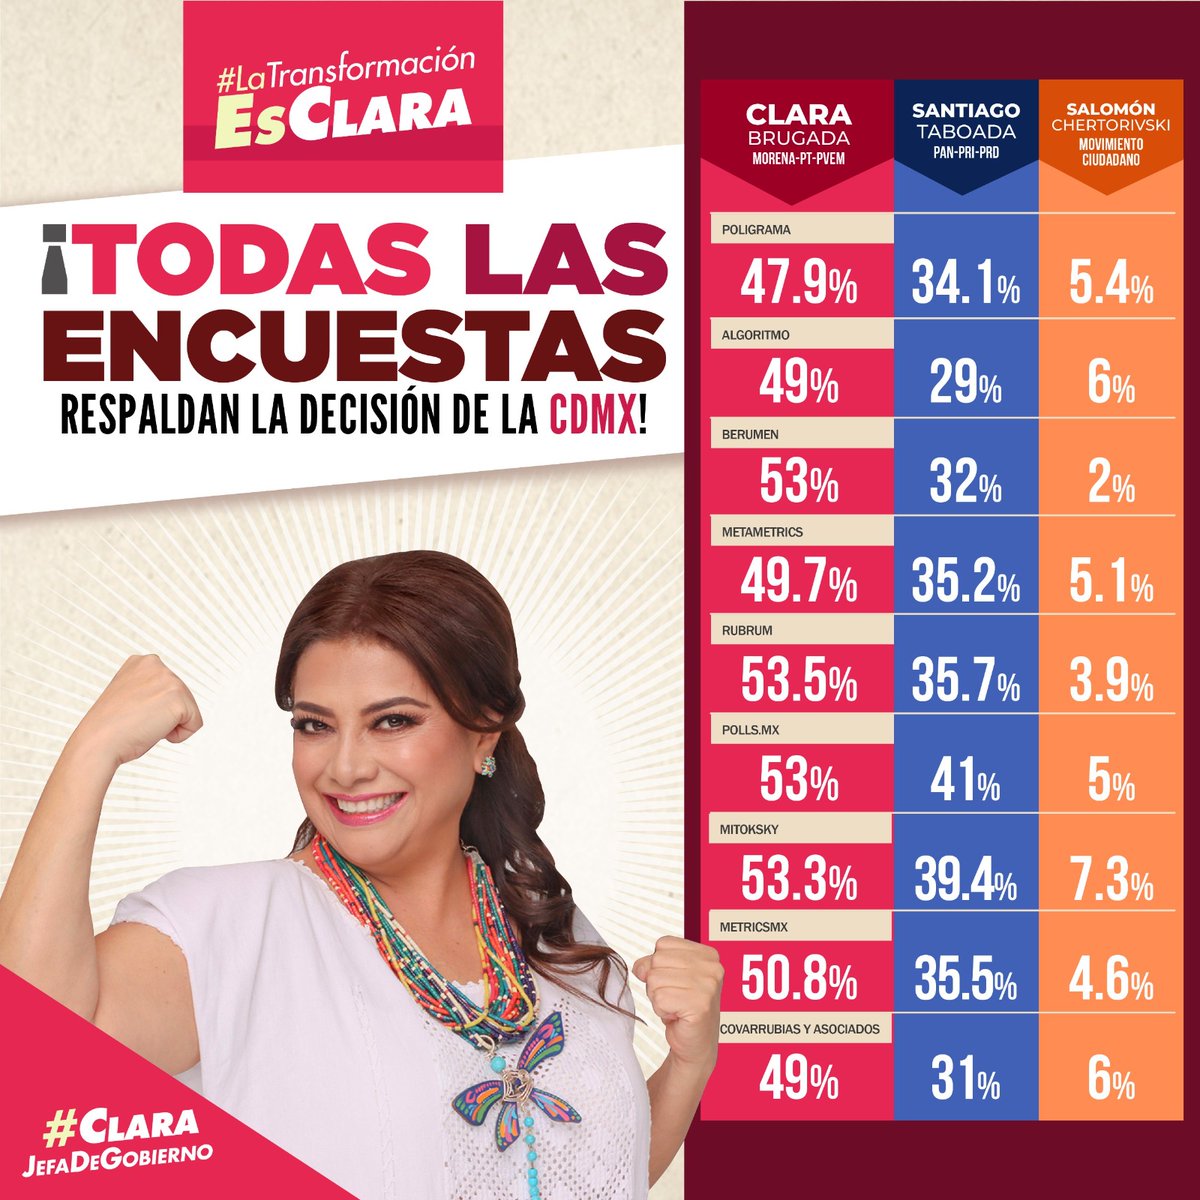 #LaTransformacionEsClara 
#ClaraJefaDeGobieno